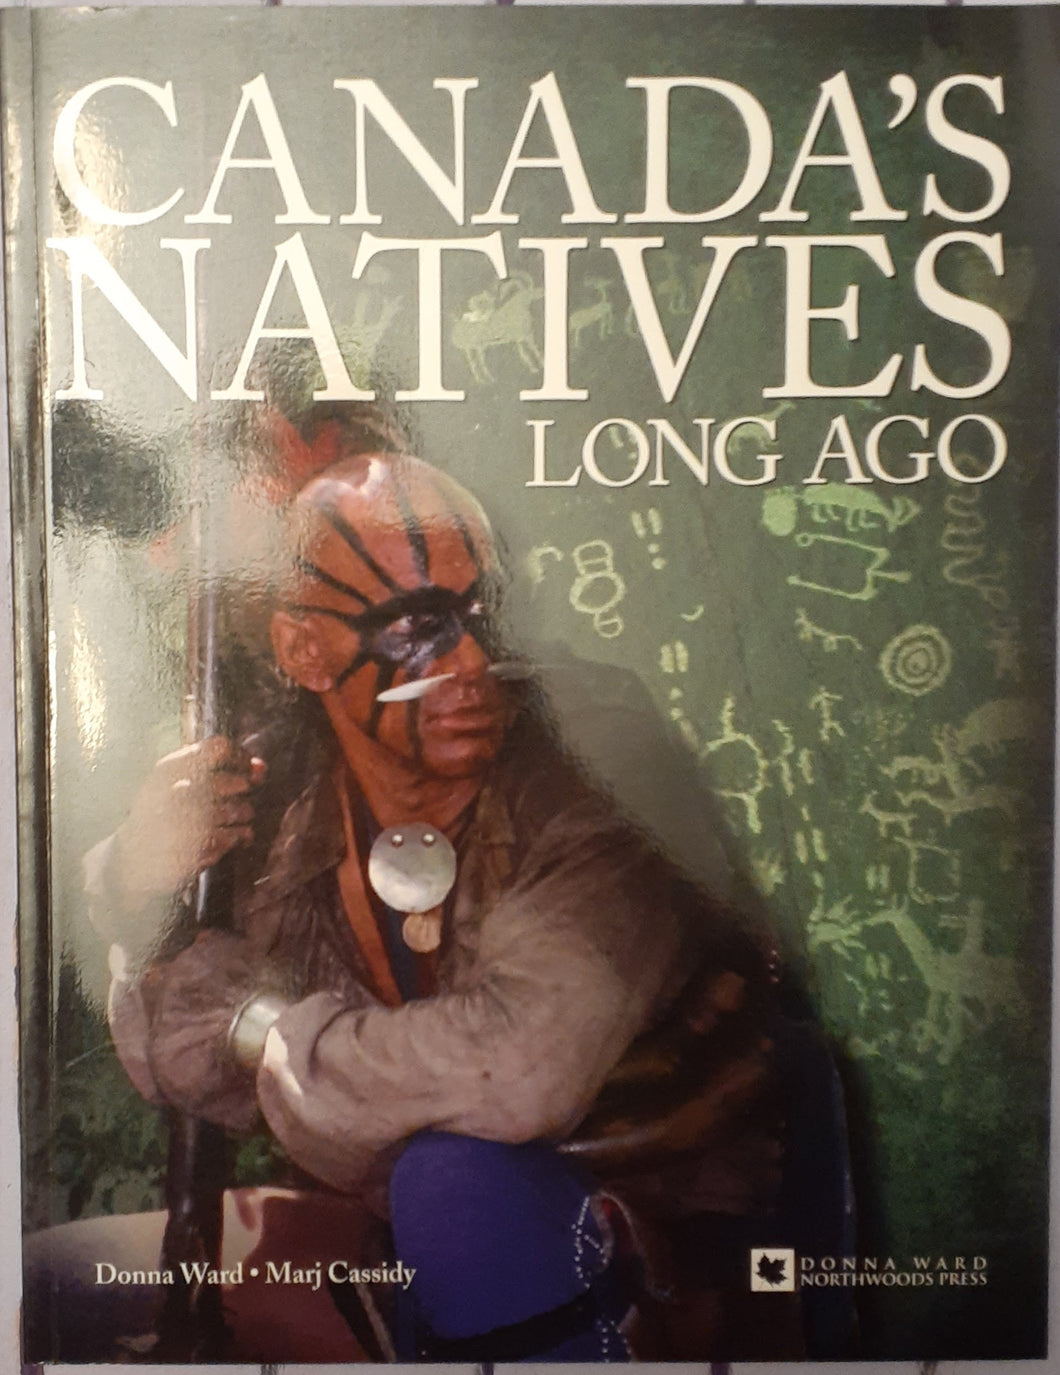 Canada's Natives Long Ago